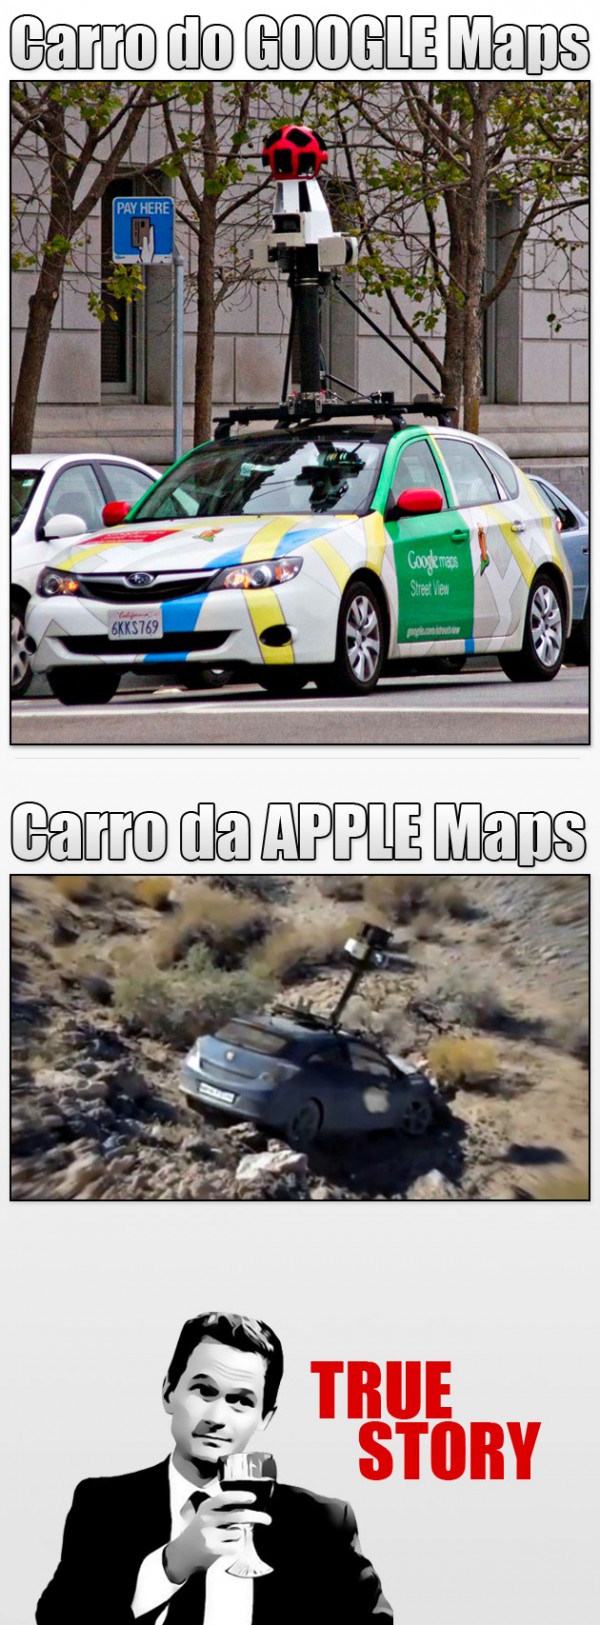 Google vs Apple - meme